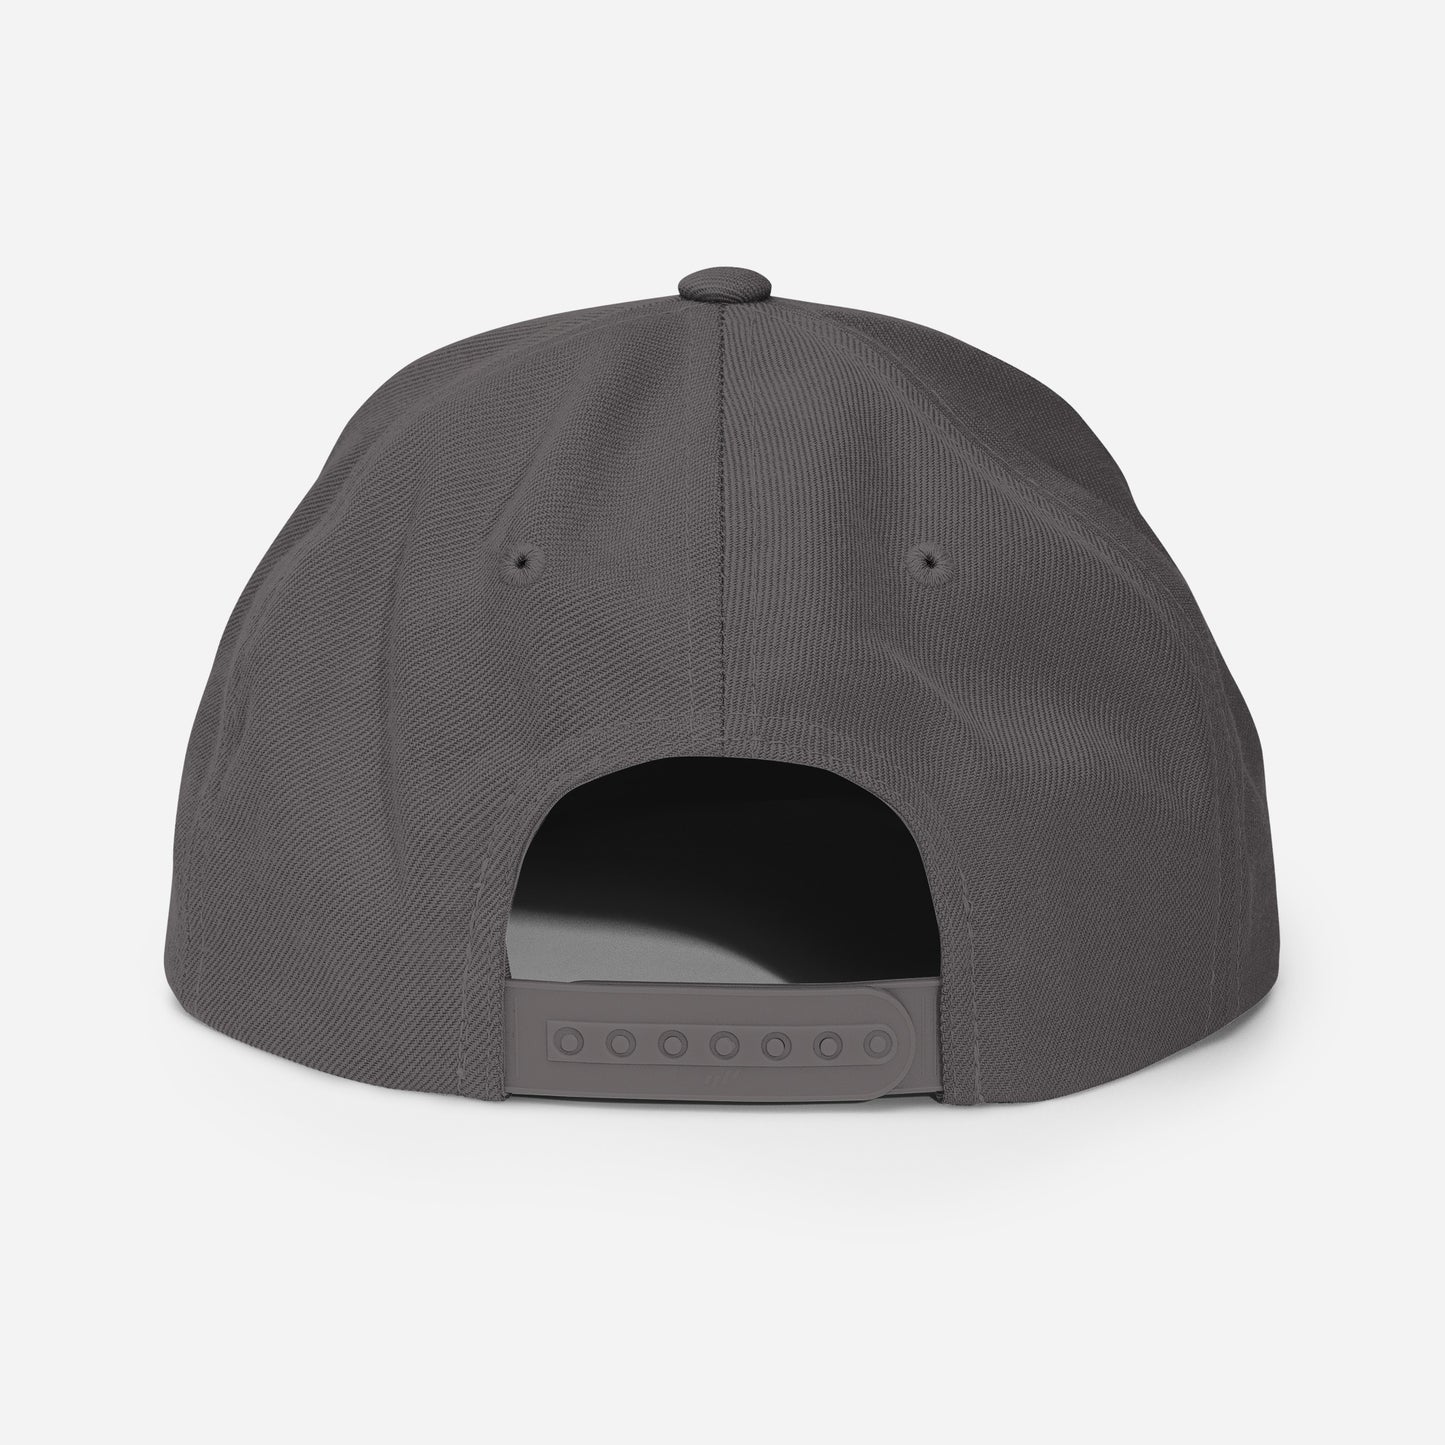 WBLAHA Shield Snapback Hat